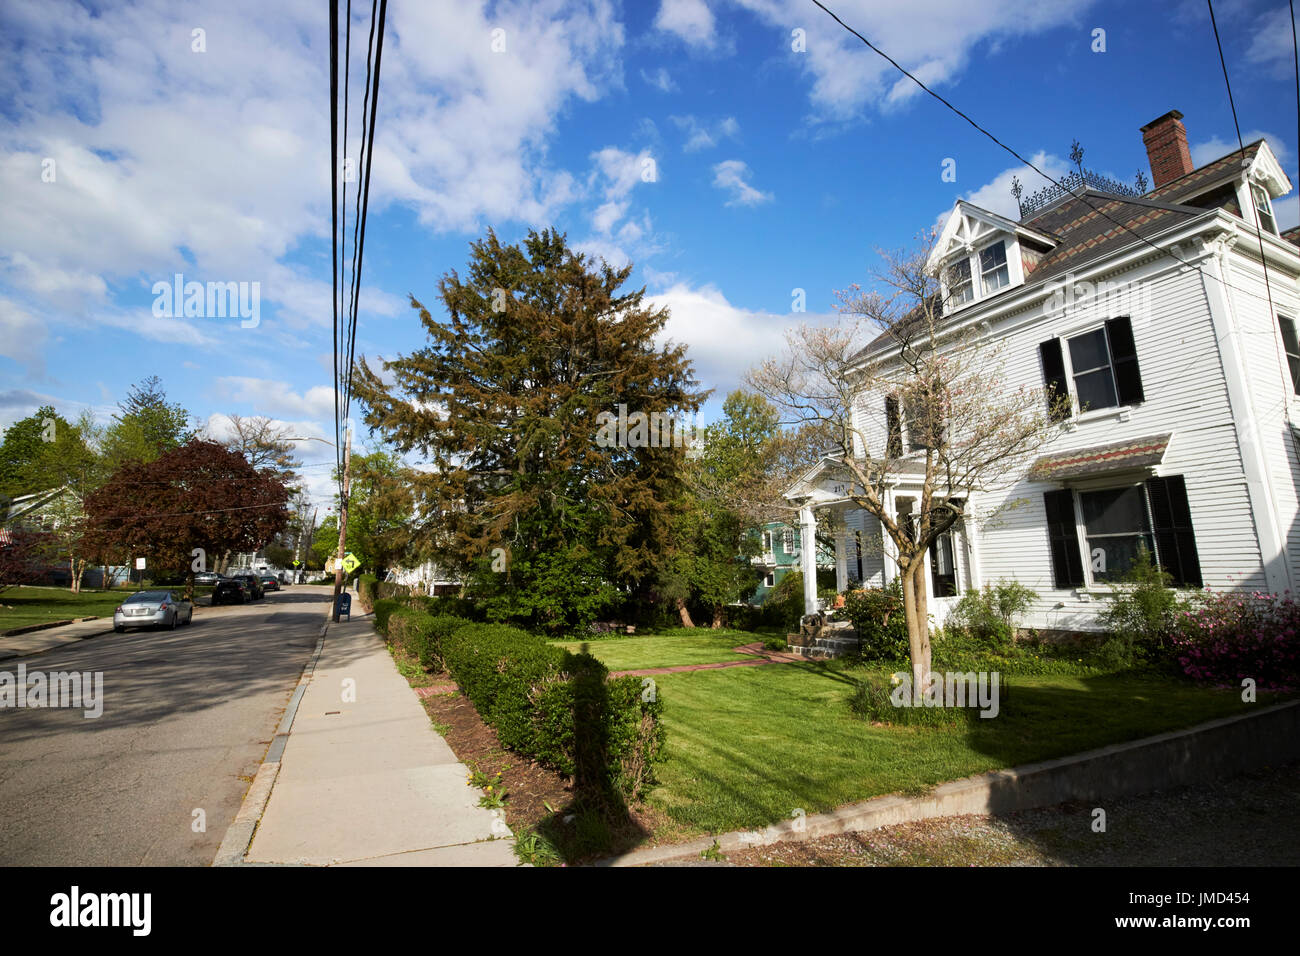 Savin hill avenue résidentielle riche quartier victorien Boston USA Banque D'Images